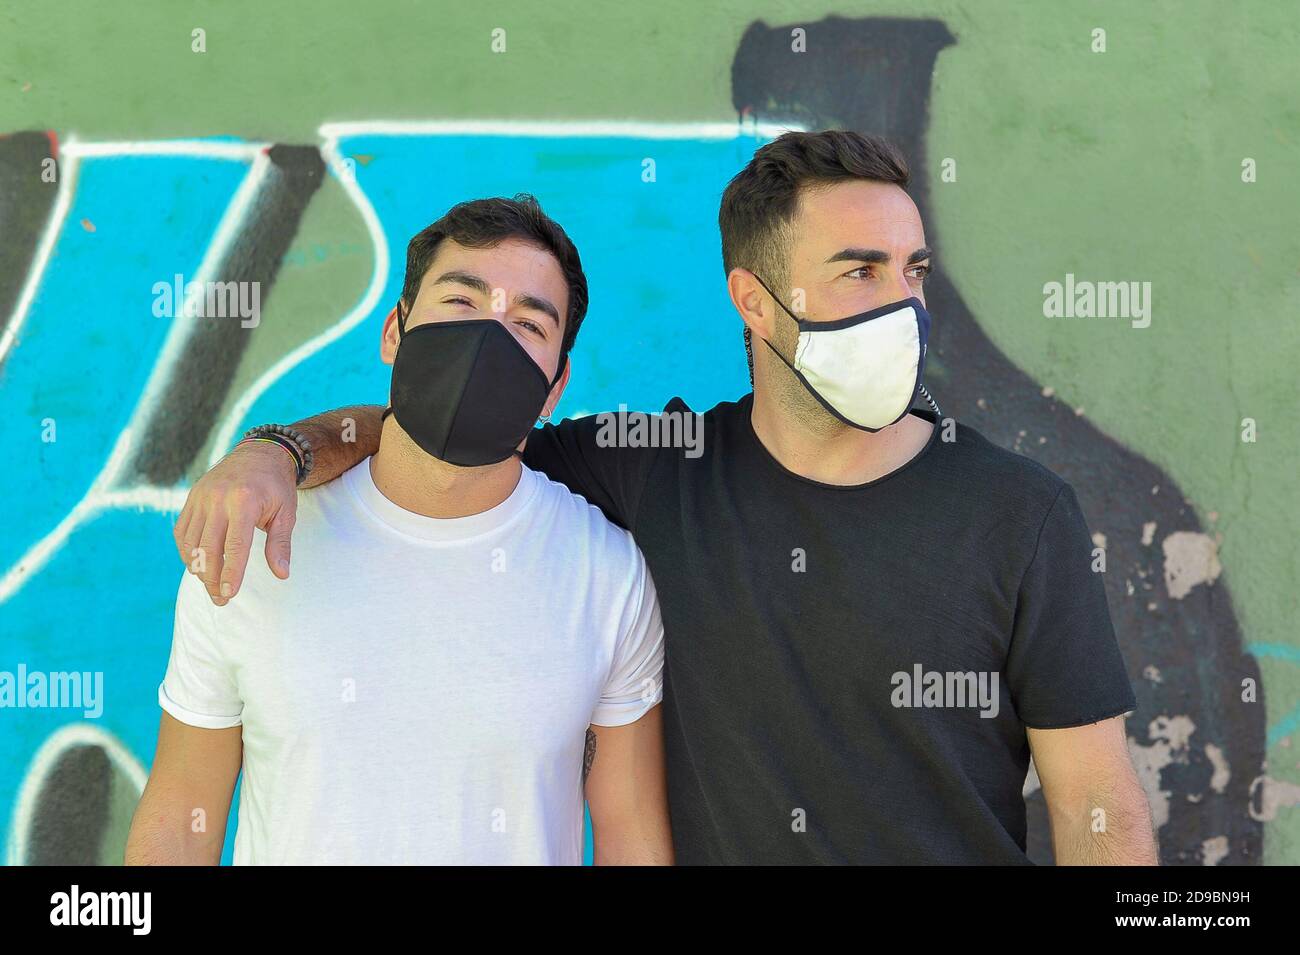 Deux amis utilisant un masque facial à l'extérieur. Concept amitié nouvelle norme Banque D'Images